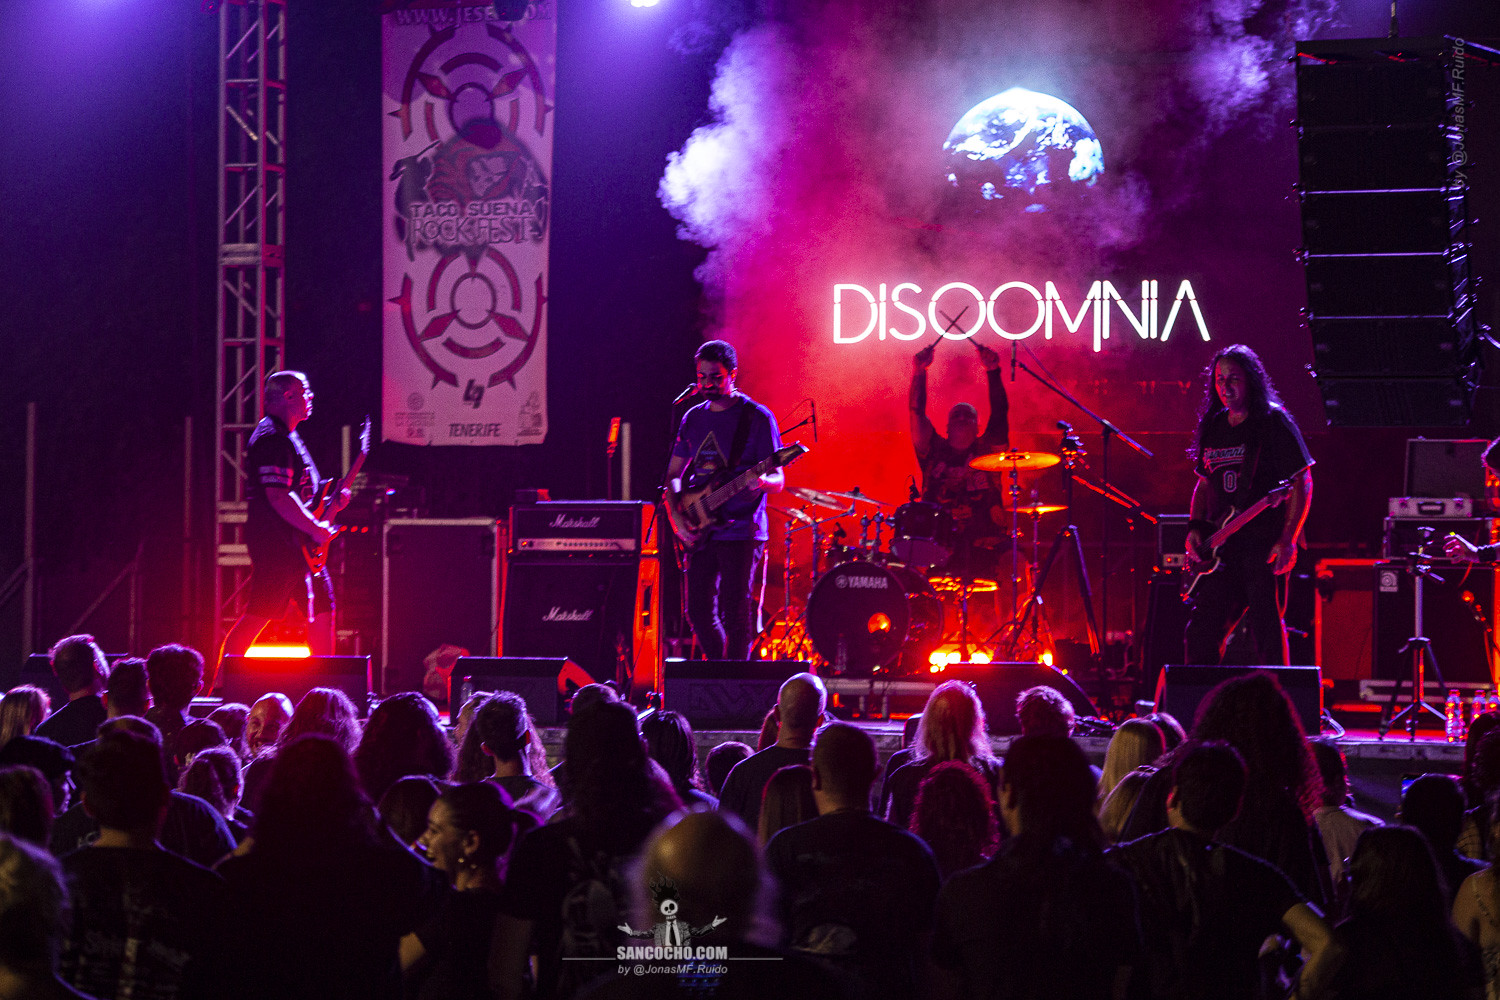 Disoomnia [Taco Suena Rock Fest 2023]